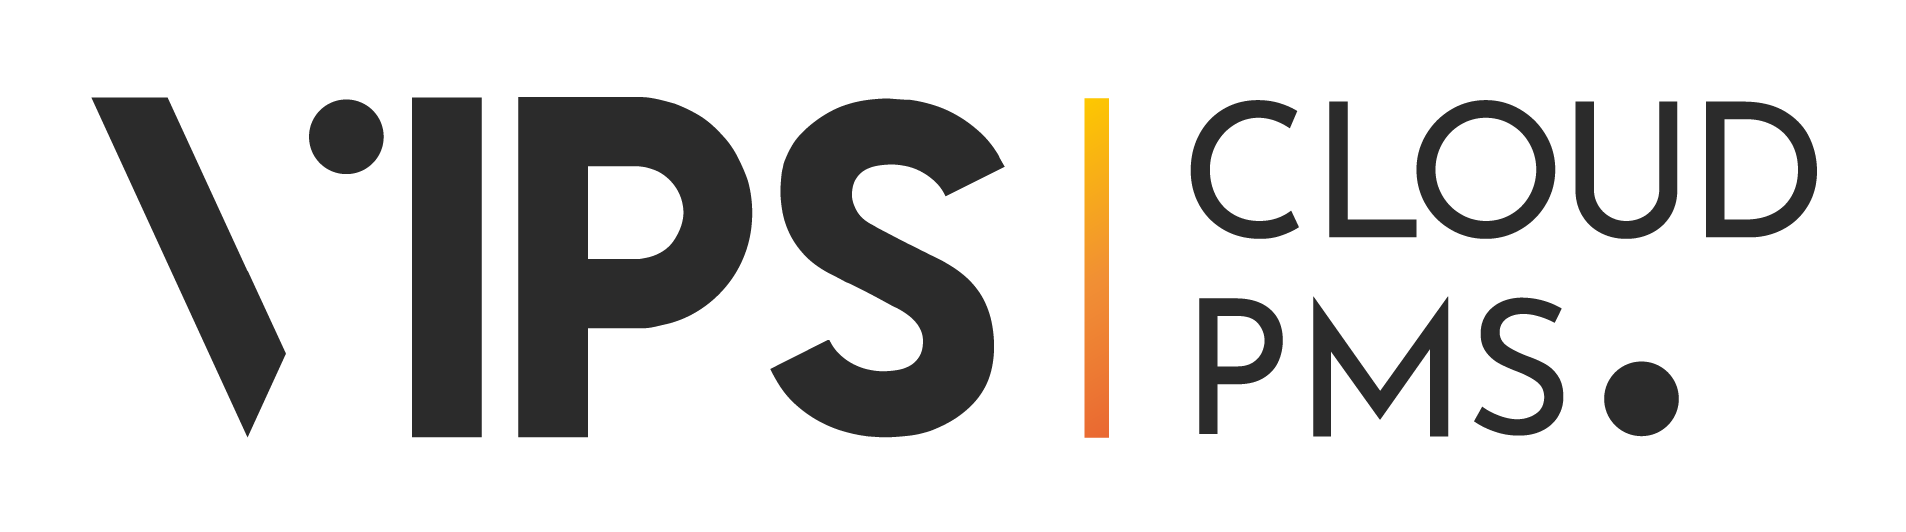 Logo-VIPS CloudPMS